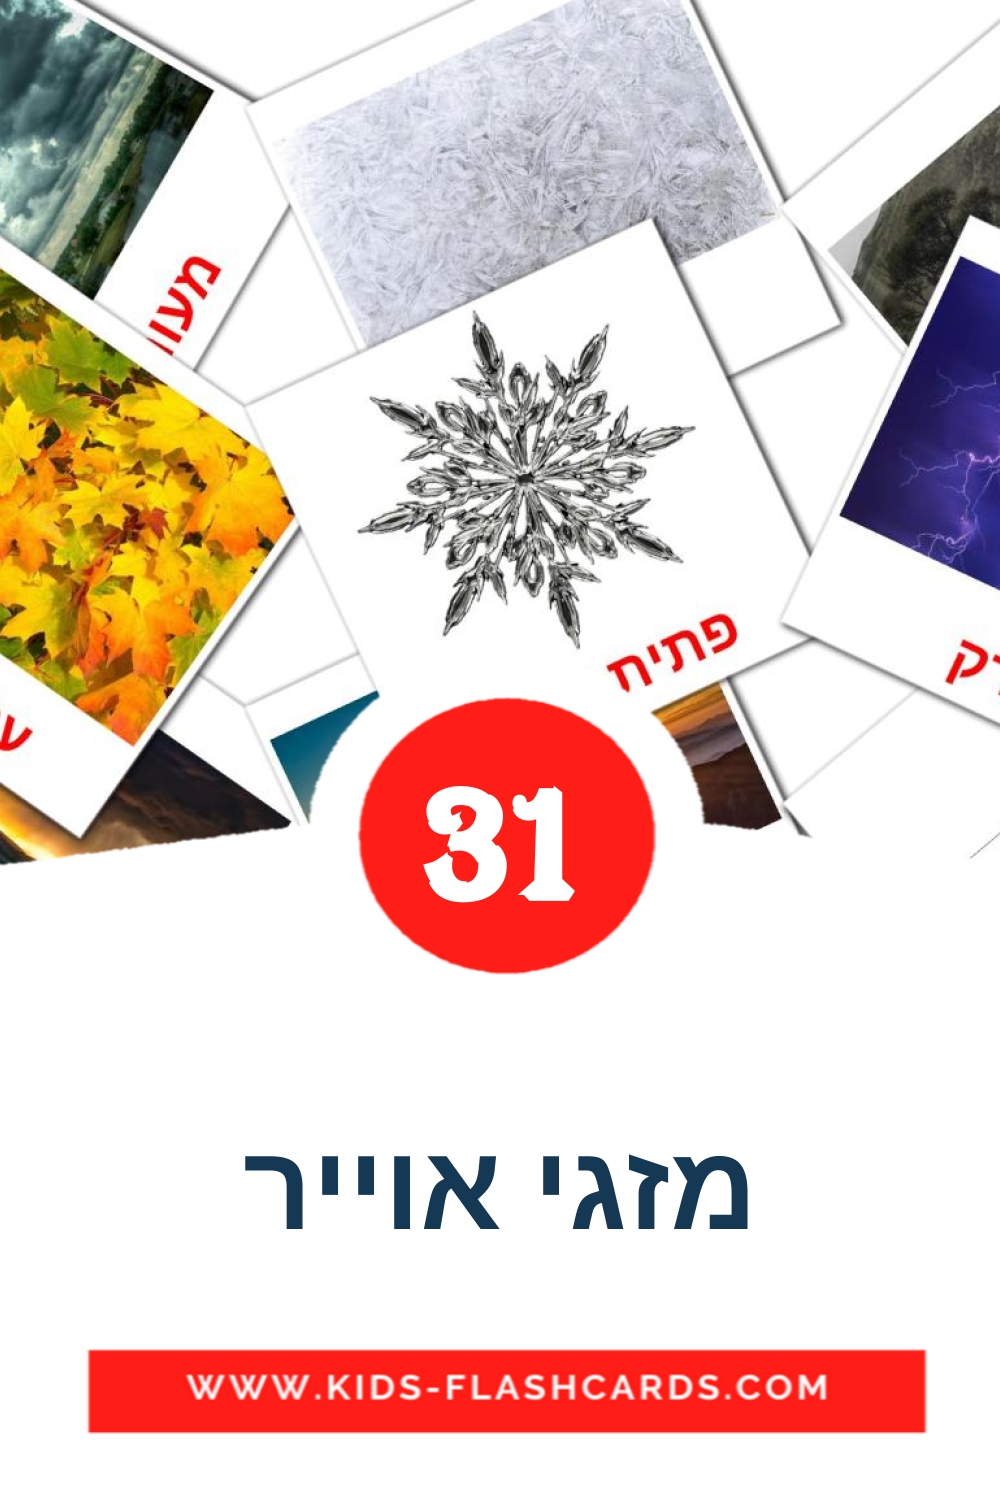 31 Cartões com Imagens de מזגי אוייר para Jardim de Infância em hebraico